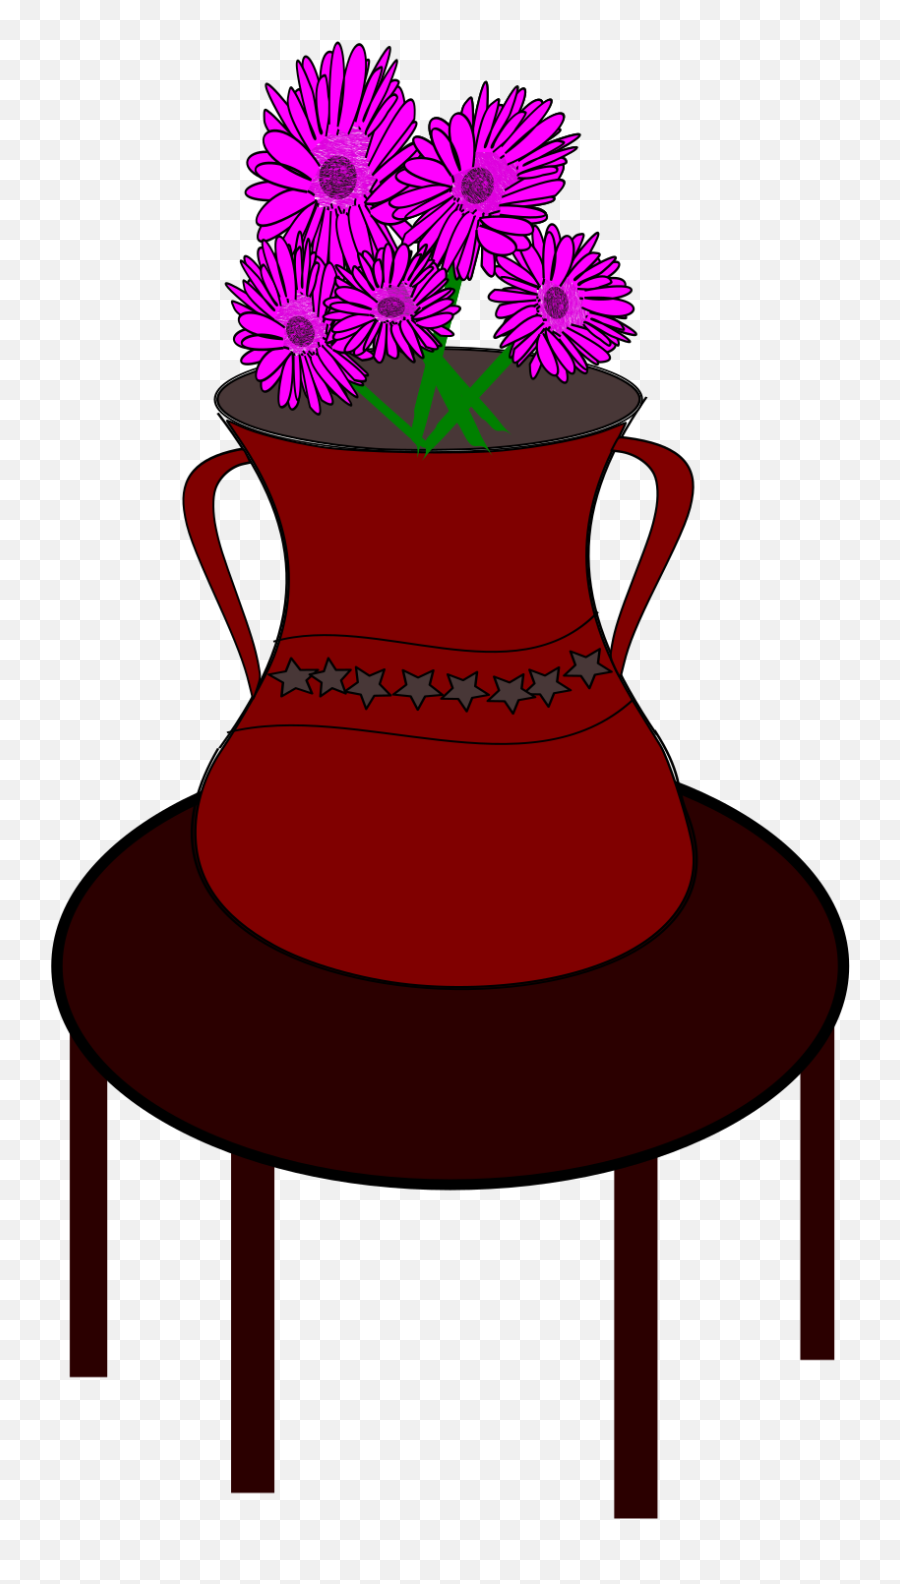 Flower Vase Clipart - Full Size Clipart 2044269 Pinclipart Emoji,Flower Vase Clipart